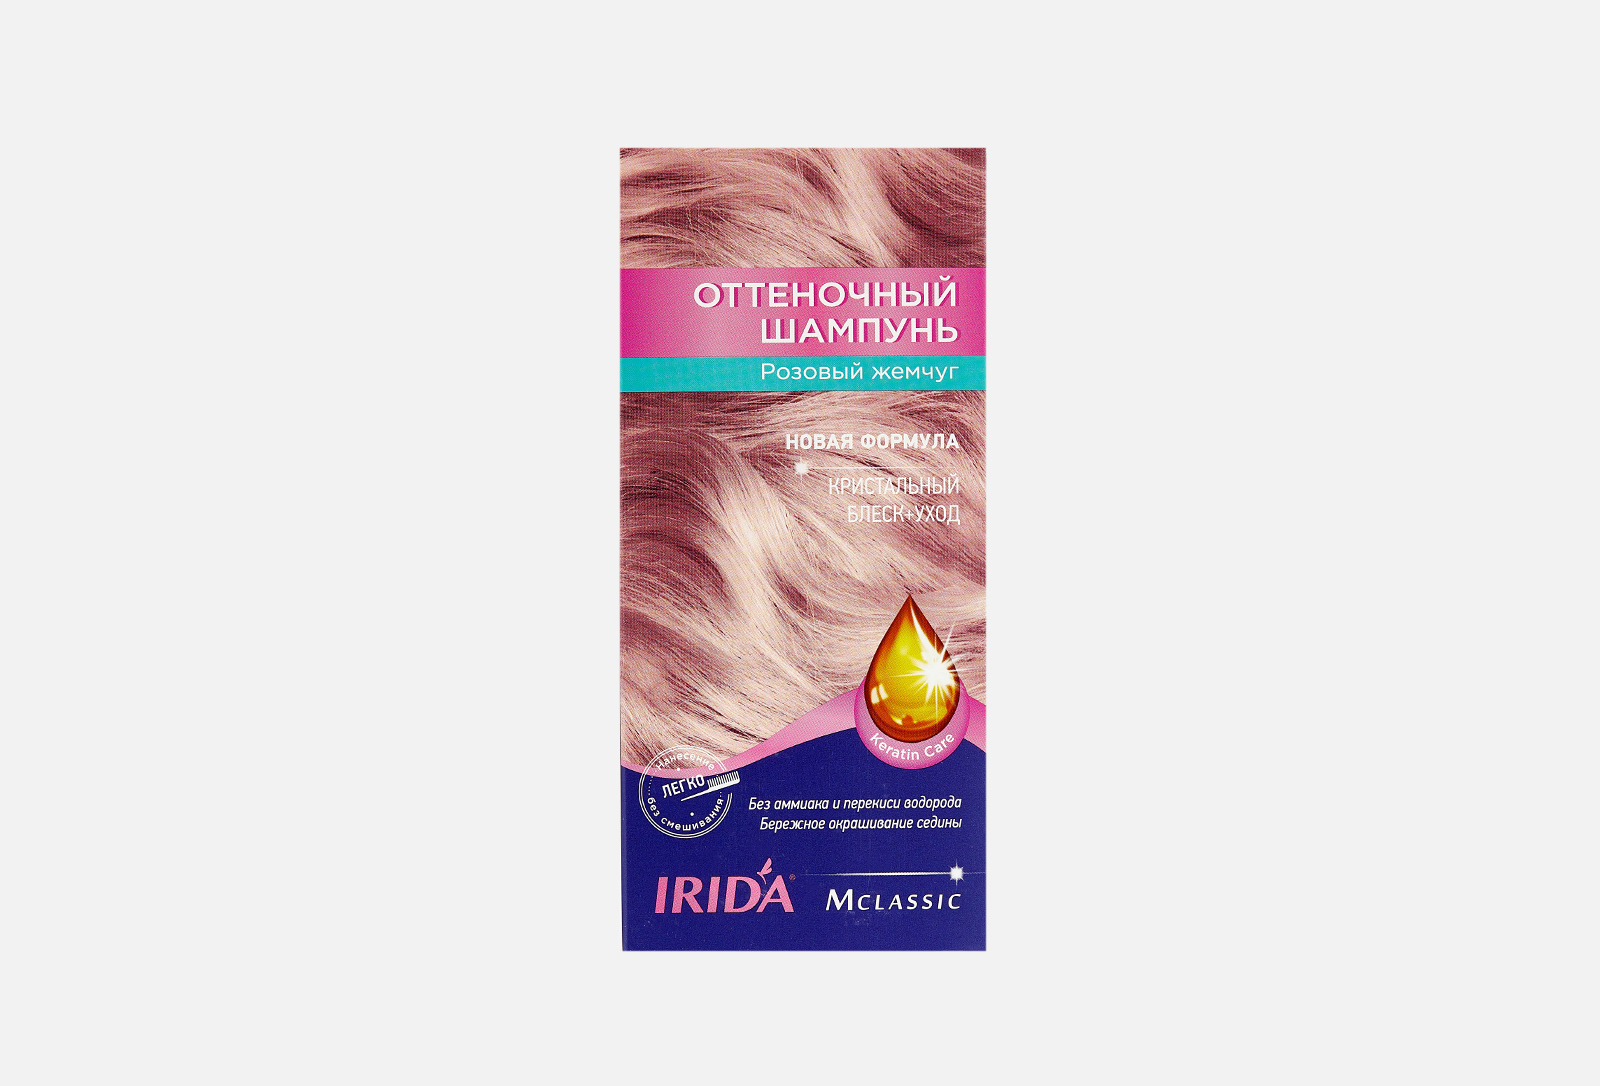 Оттеночный шампунь жемчужный. Оттеночный шампунь для волос Ирида. Ирида оттеночный шампунь розовый жемчуг. Irida оттеночный шампунь розовый жемчуг. Ирида оттеночный шампунь розовый.